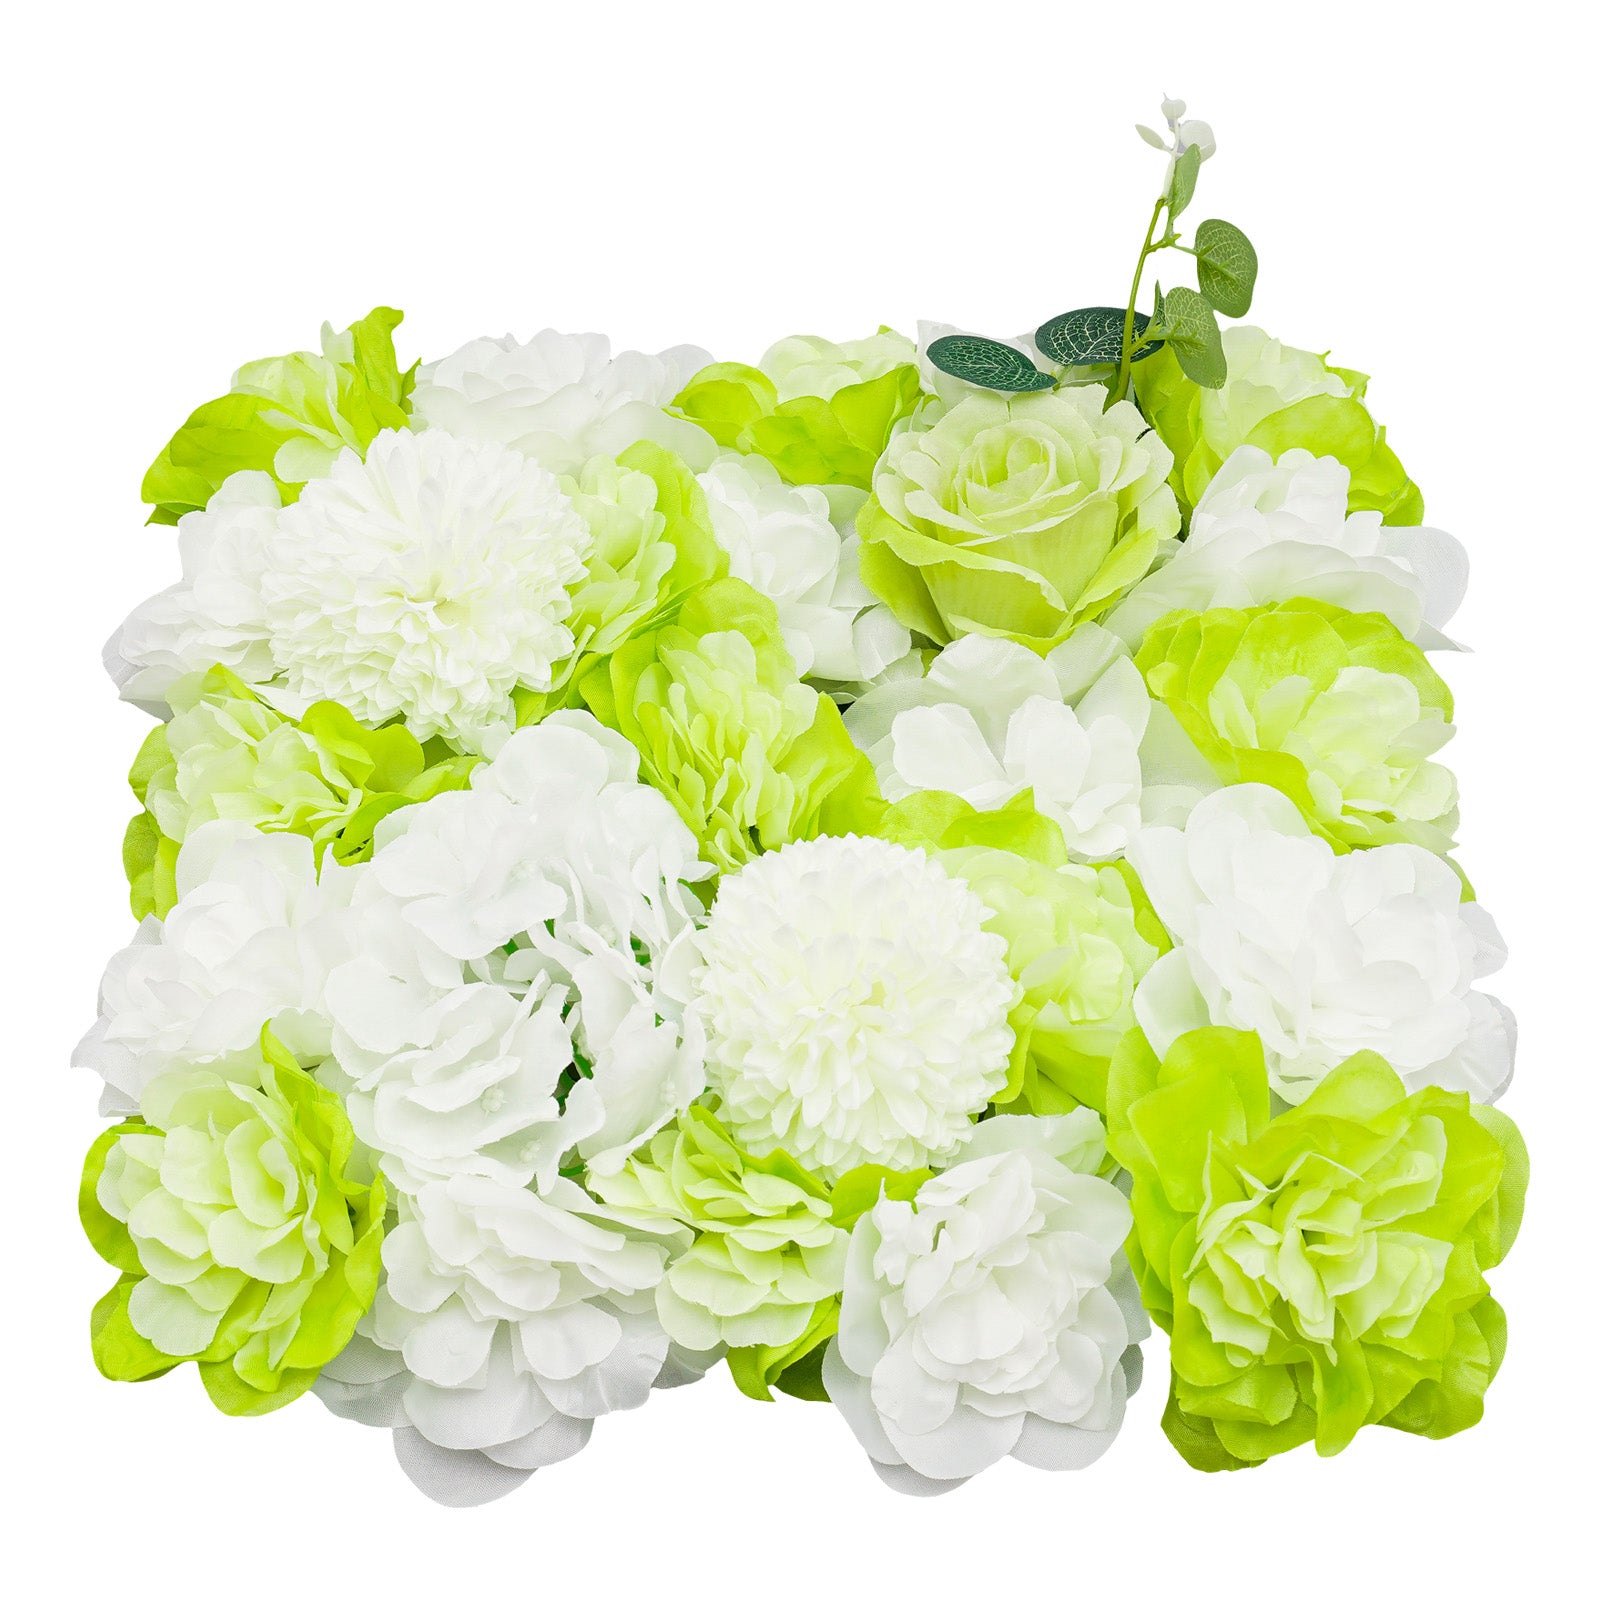 CNCEST Kunstpflanzen 6 Stück Künstliche Blumenwand 38cm X 38cm, für Hochzeit Straße Party, Hortensie Weiße+ Rosen Grüner